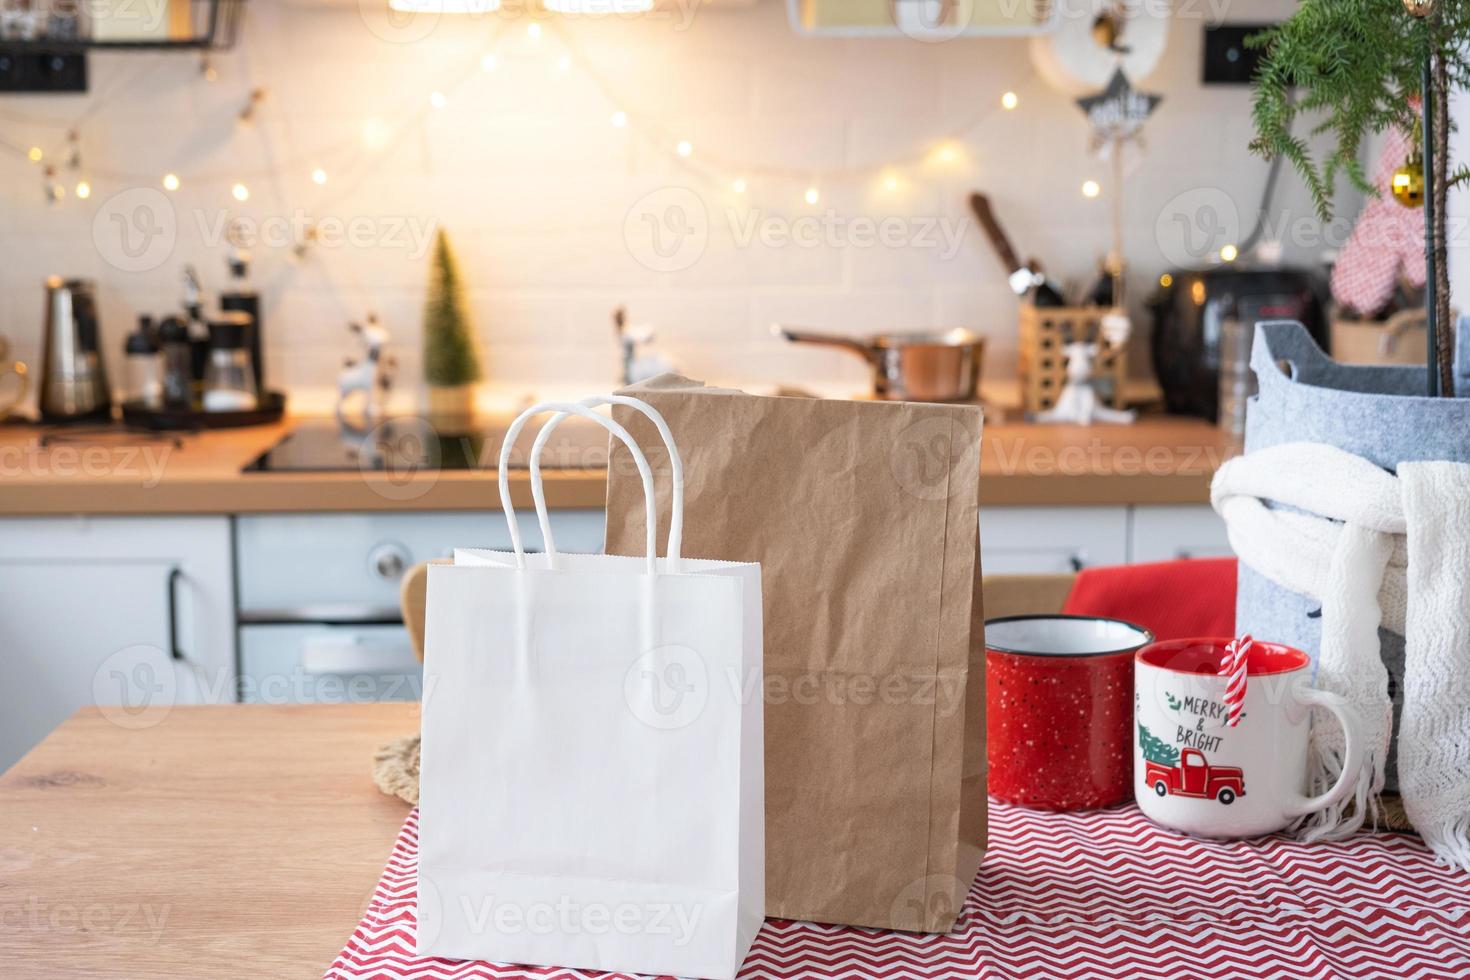 mat leverans service behållare på tabell vit scandi festlig kök i jul dekor. eve ny år, sparande tid, för lat till laga mat, varm ordning, disponibel plast låda i fe- ljus. falsk upp foto